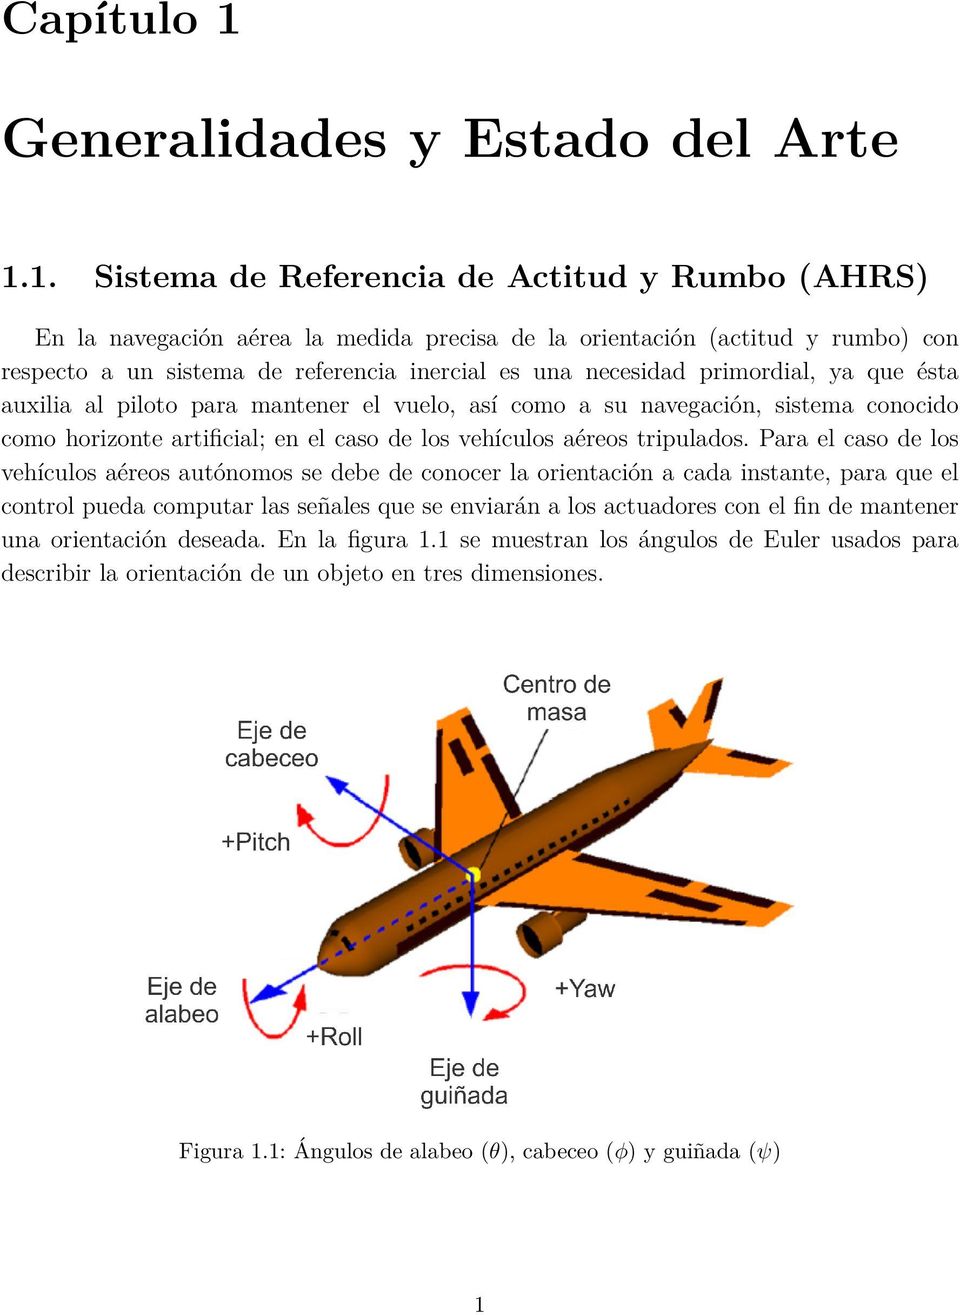 1. Sistema de Referencia de Actitud y Rumbo (AHRS) En la navegación aérea la medida precisa de la orientación (actitud y rumbo) con respecto a un sistema de referencia inercial es una necesidad